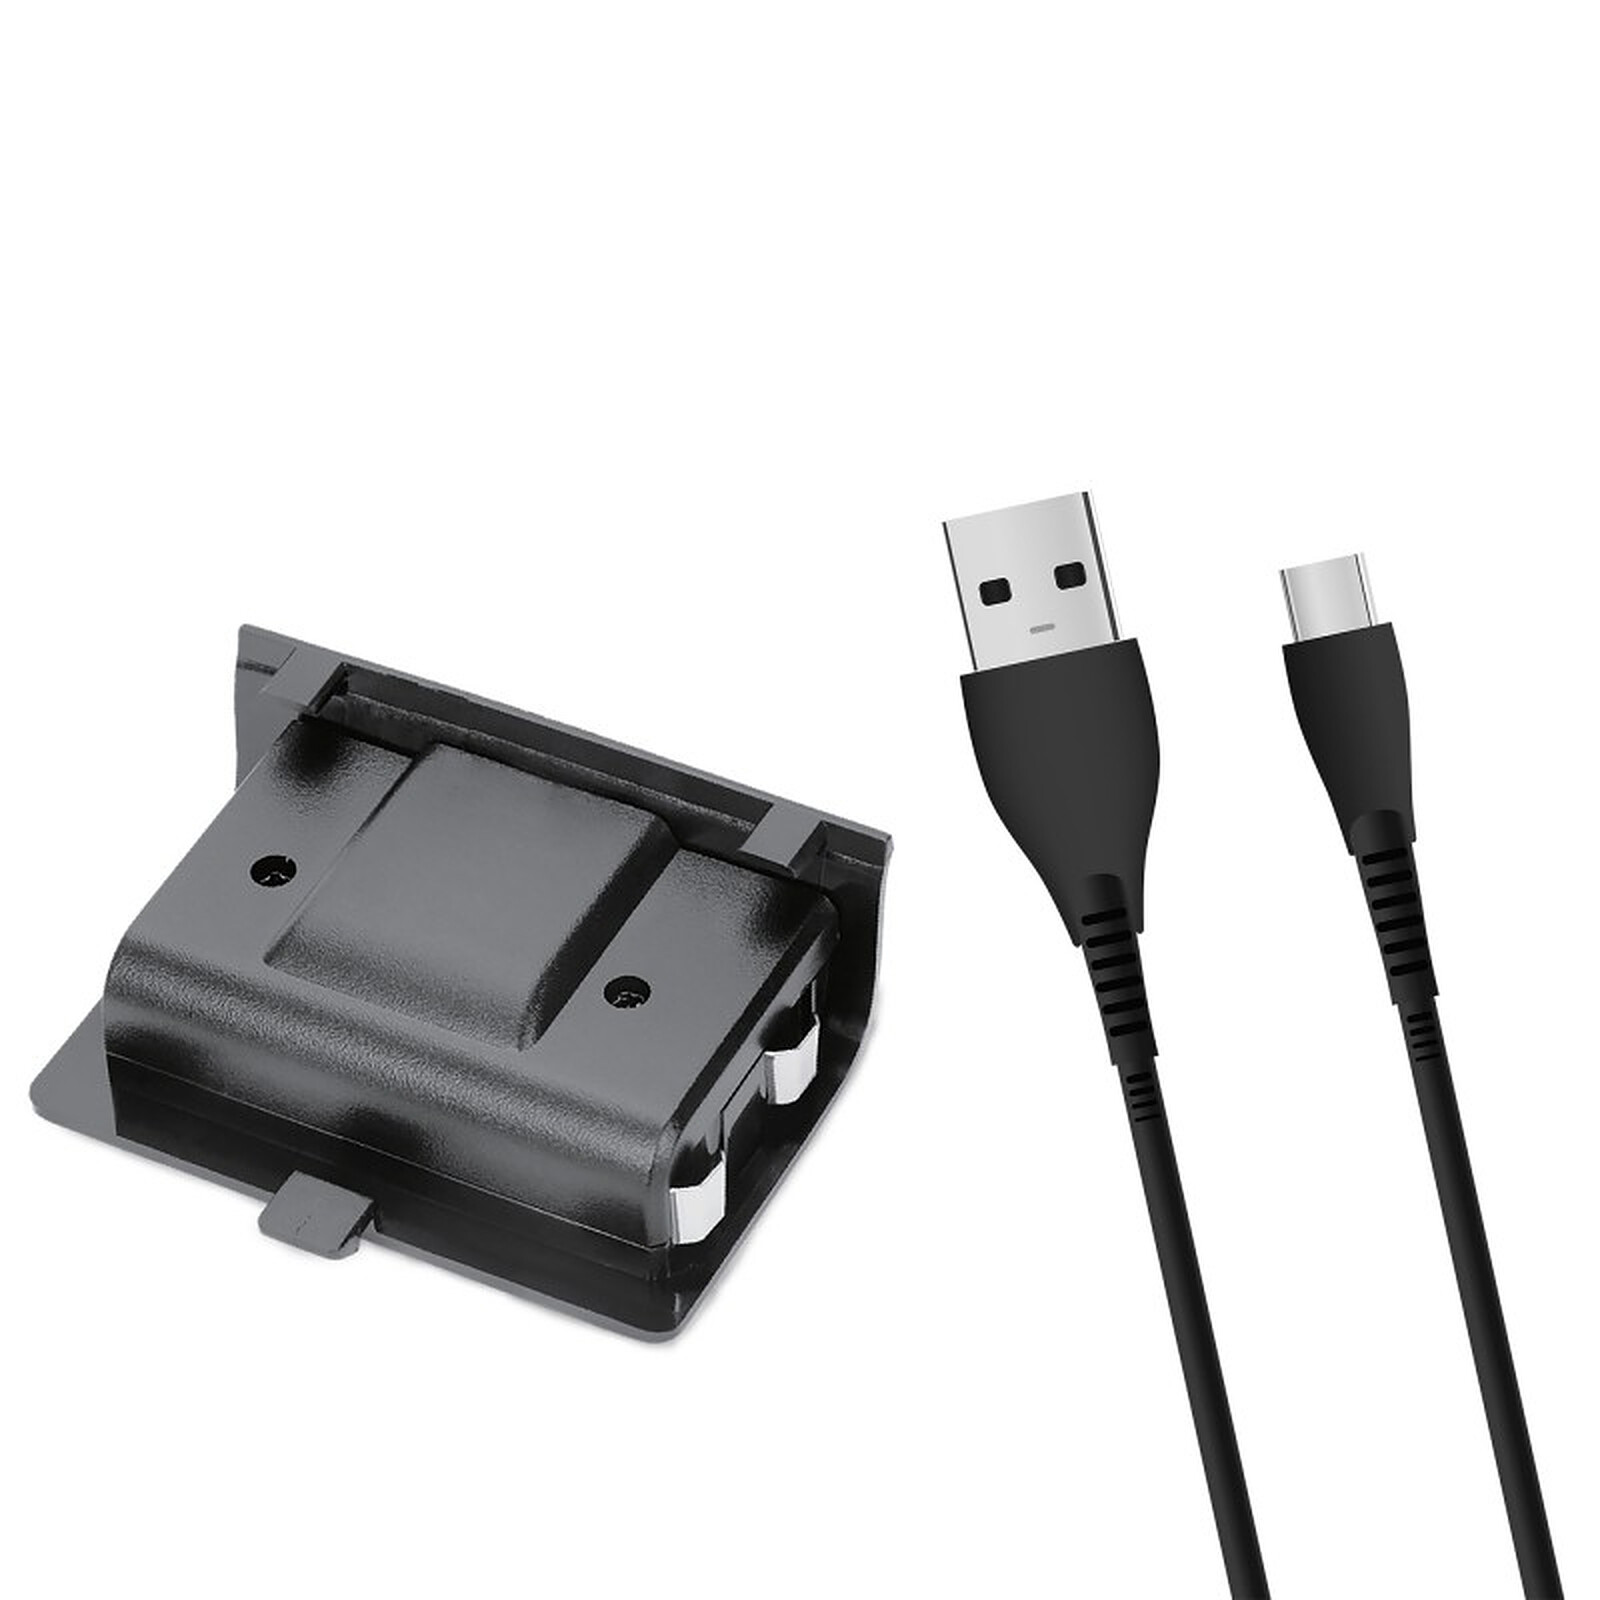 Chargeur Dock + Batterie manette USB Câble pour Xbox 360